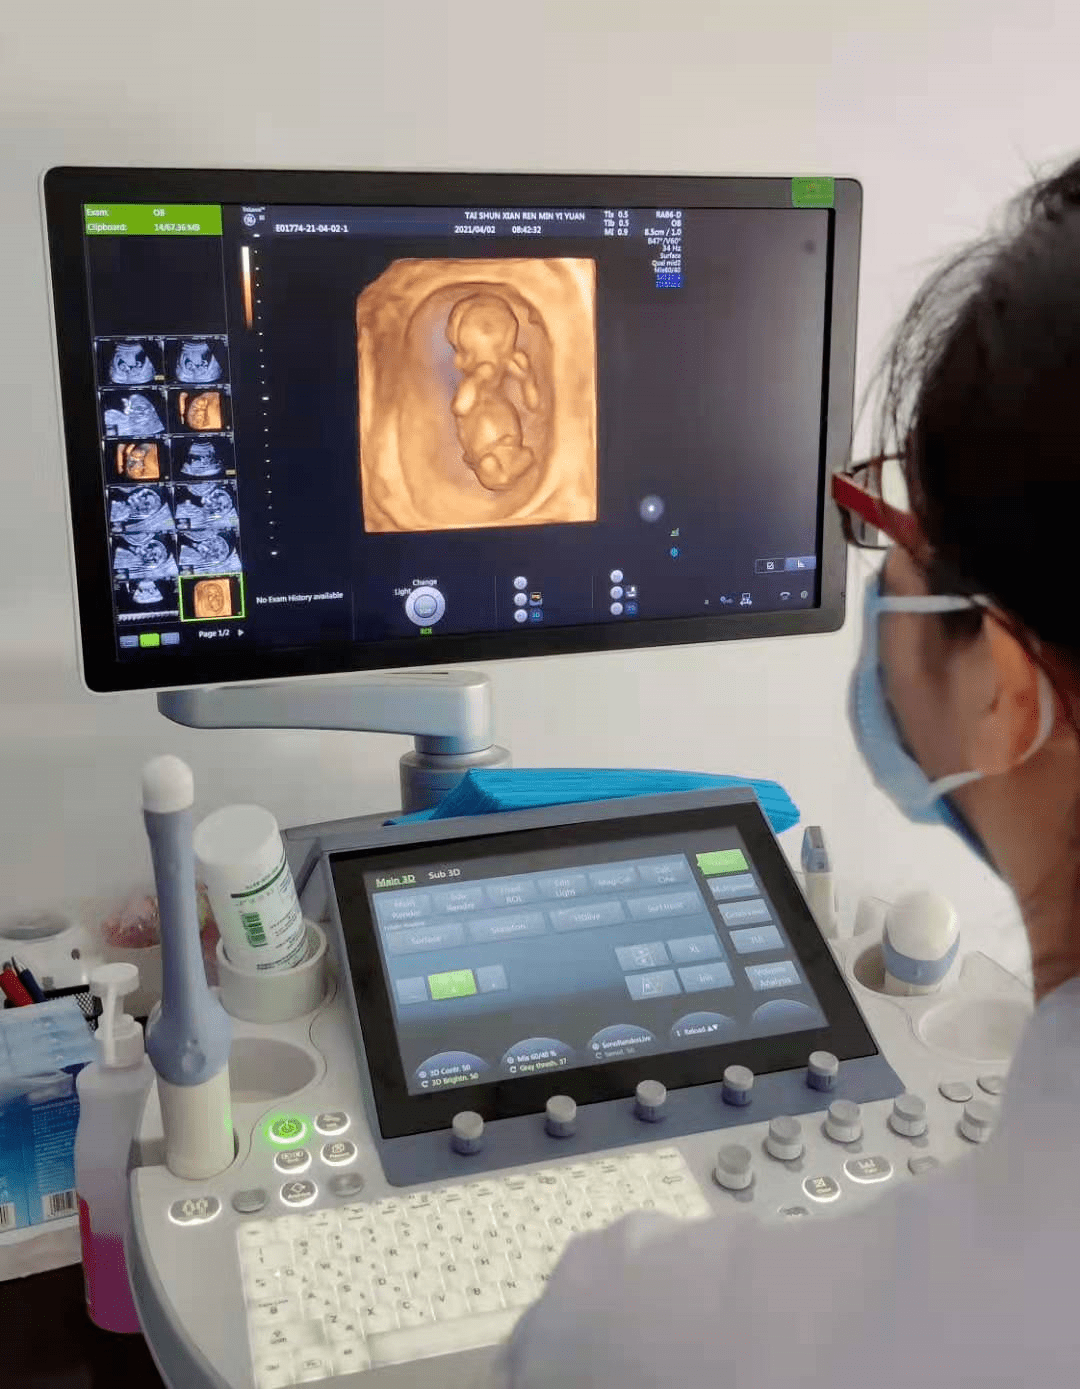 产科三维和胎儿系统筛查产科三维和胎儿系统筛查胎儿系统超声筛查